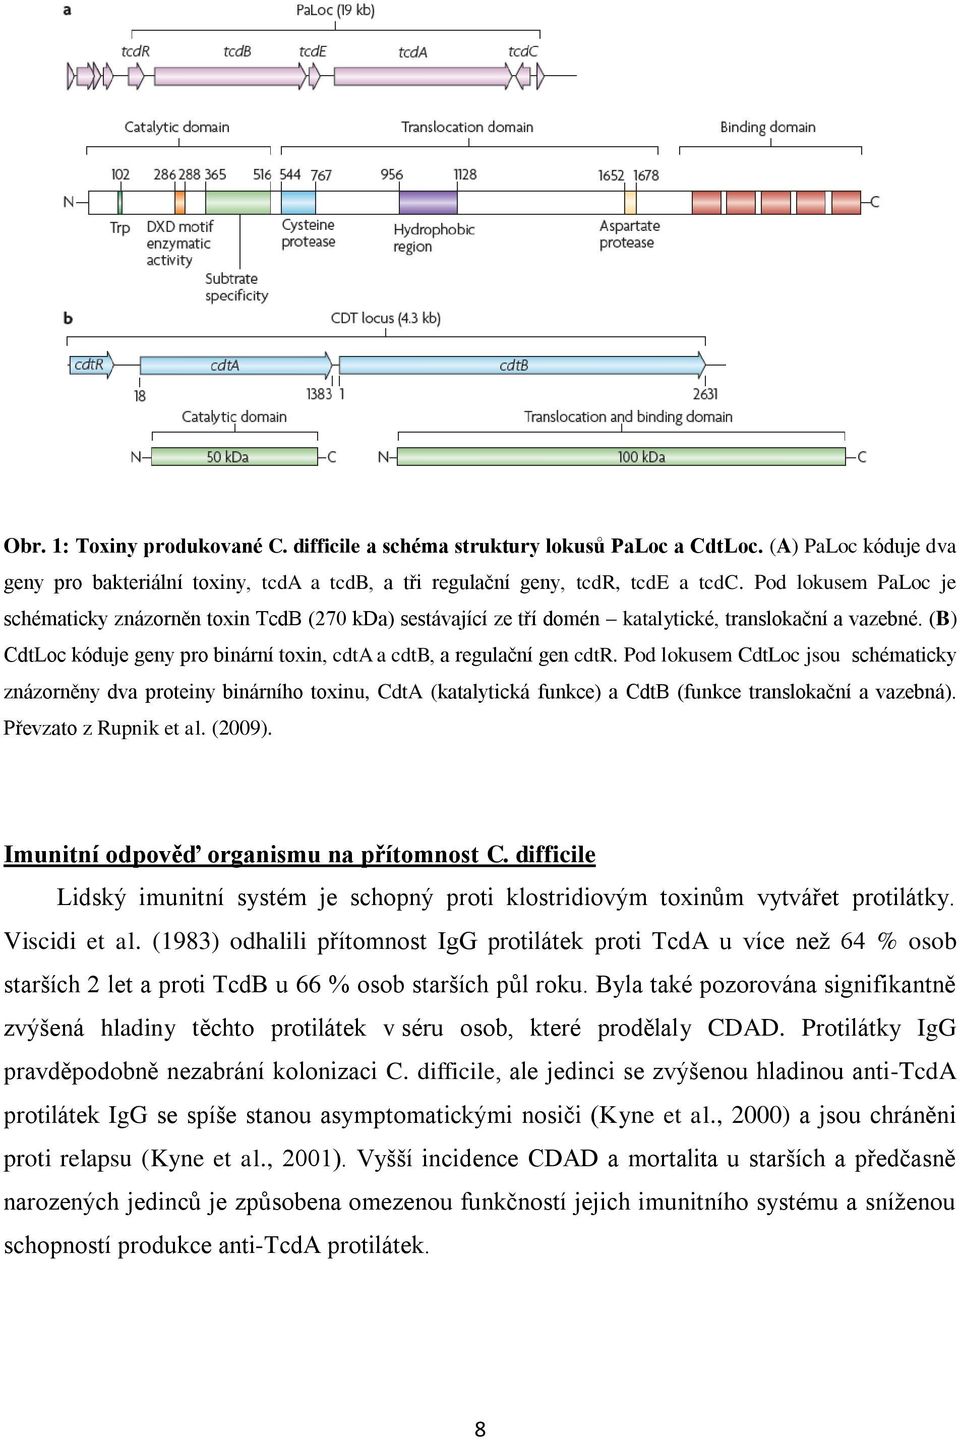 (B) CdtLoc kóduje geny pro binární toxin, cdta a cdtb, a regulační gen cdtr.